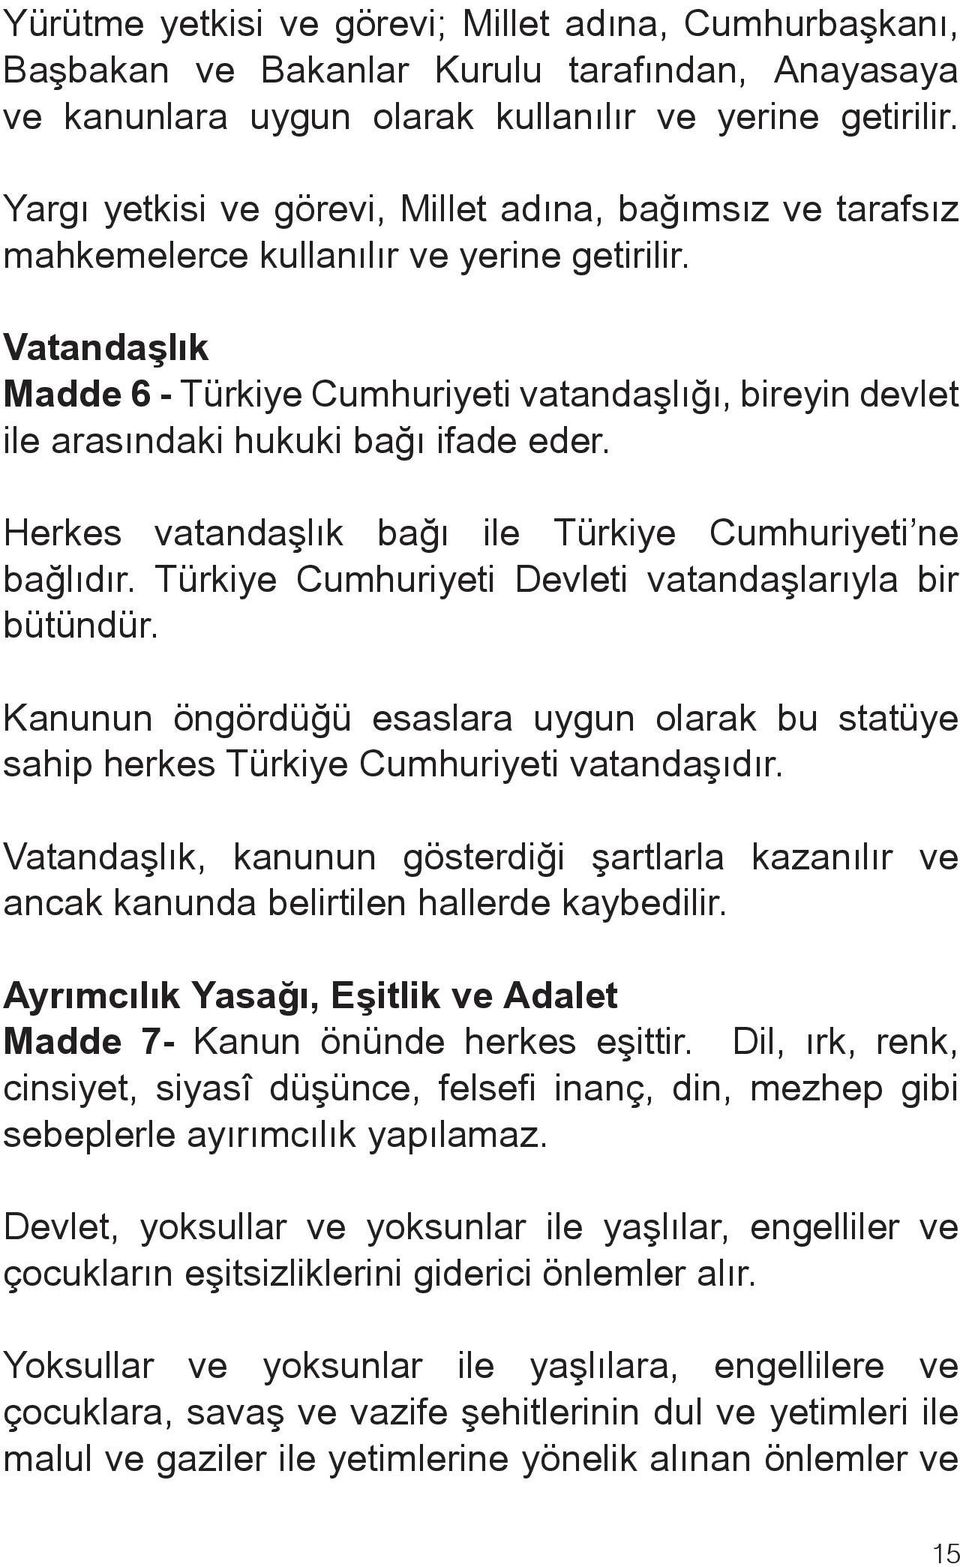 Vatandaşlık Madde 6 - Türkiye Cumhuriyeti vatandaşlığı, bireyin devlet ile arasındaki hukuki bağı ifade eder. Herkes vatandaşlık bağı ile Türkiye Cumhuriyeti ne bağlıdır.